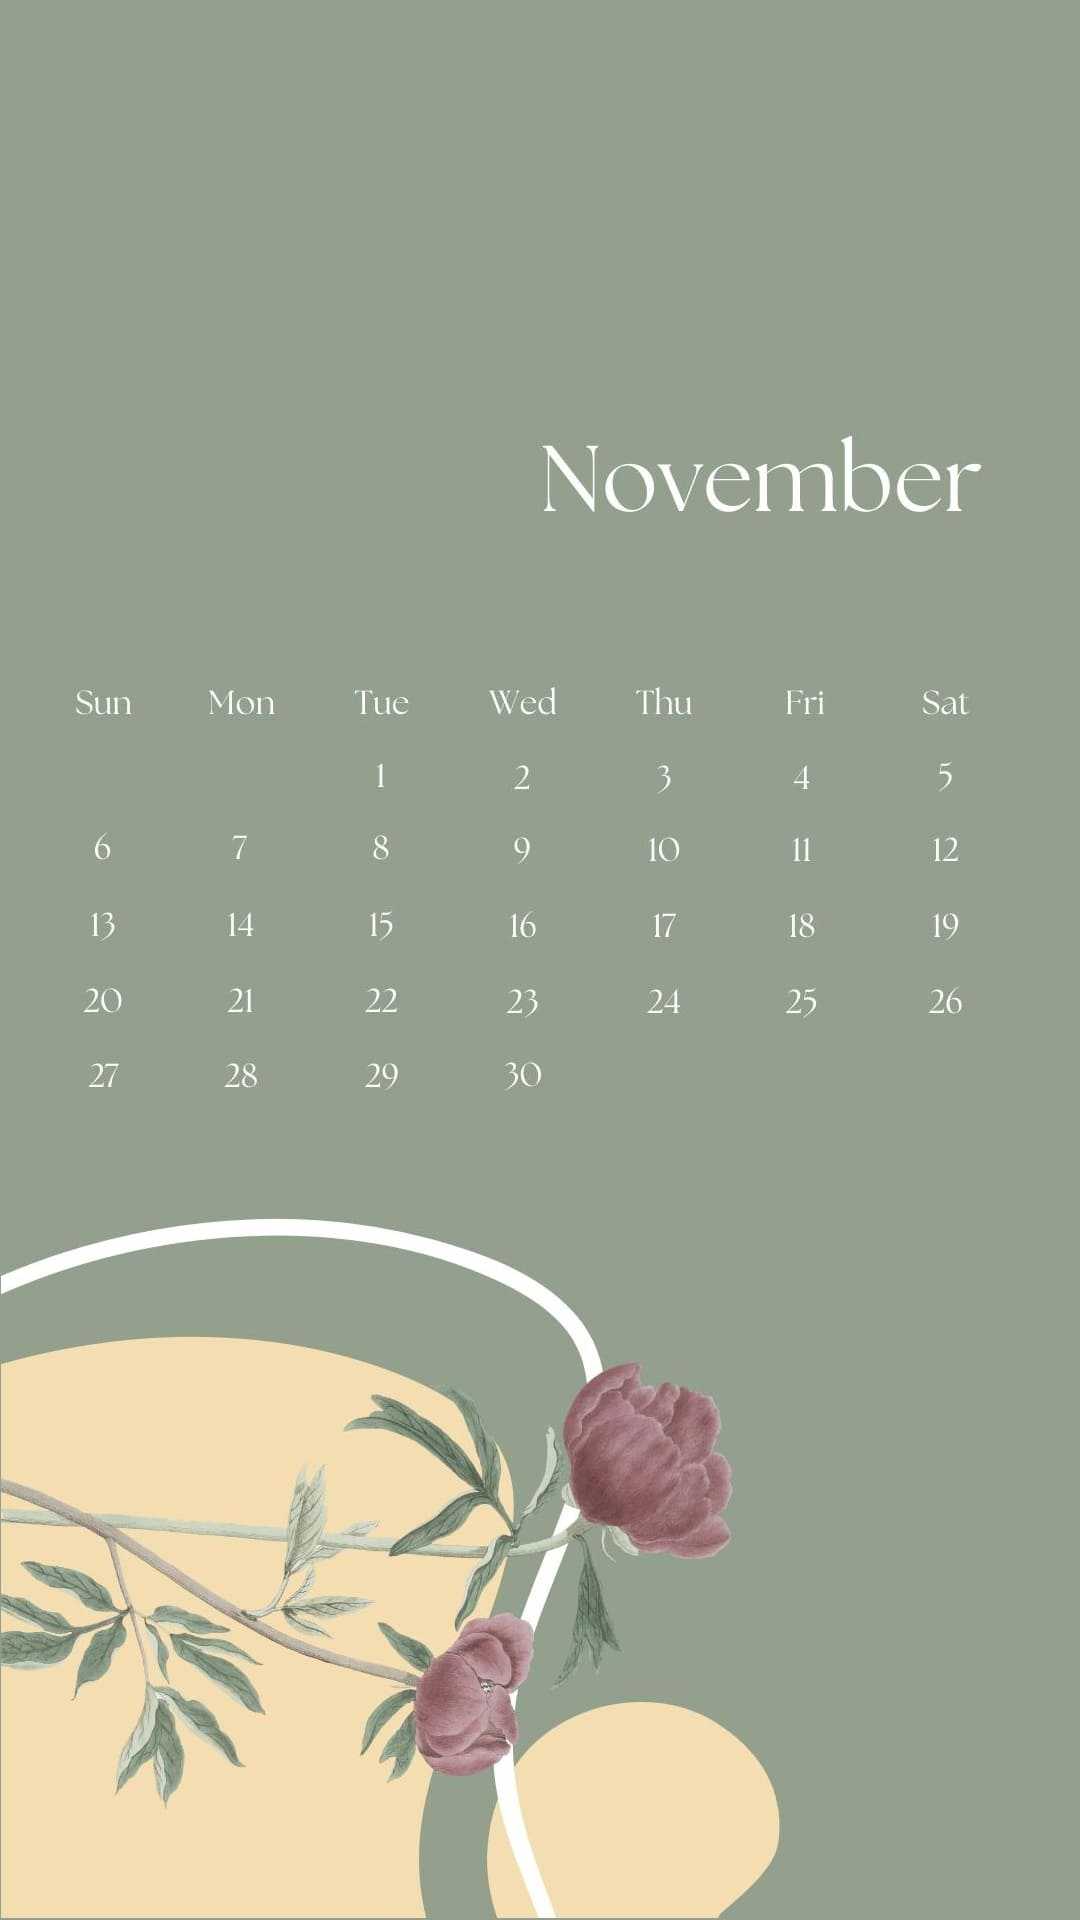 November Calendar 2022 Wallpaper - iXpap